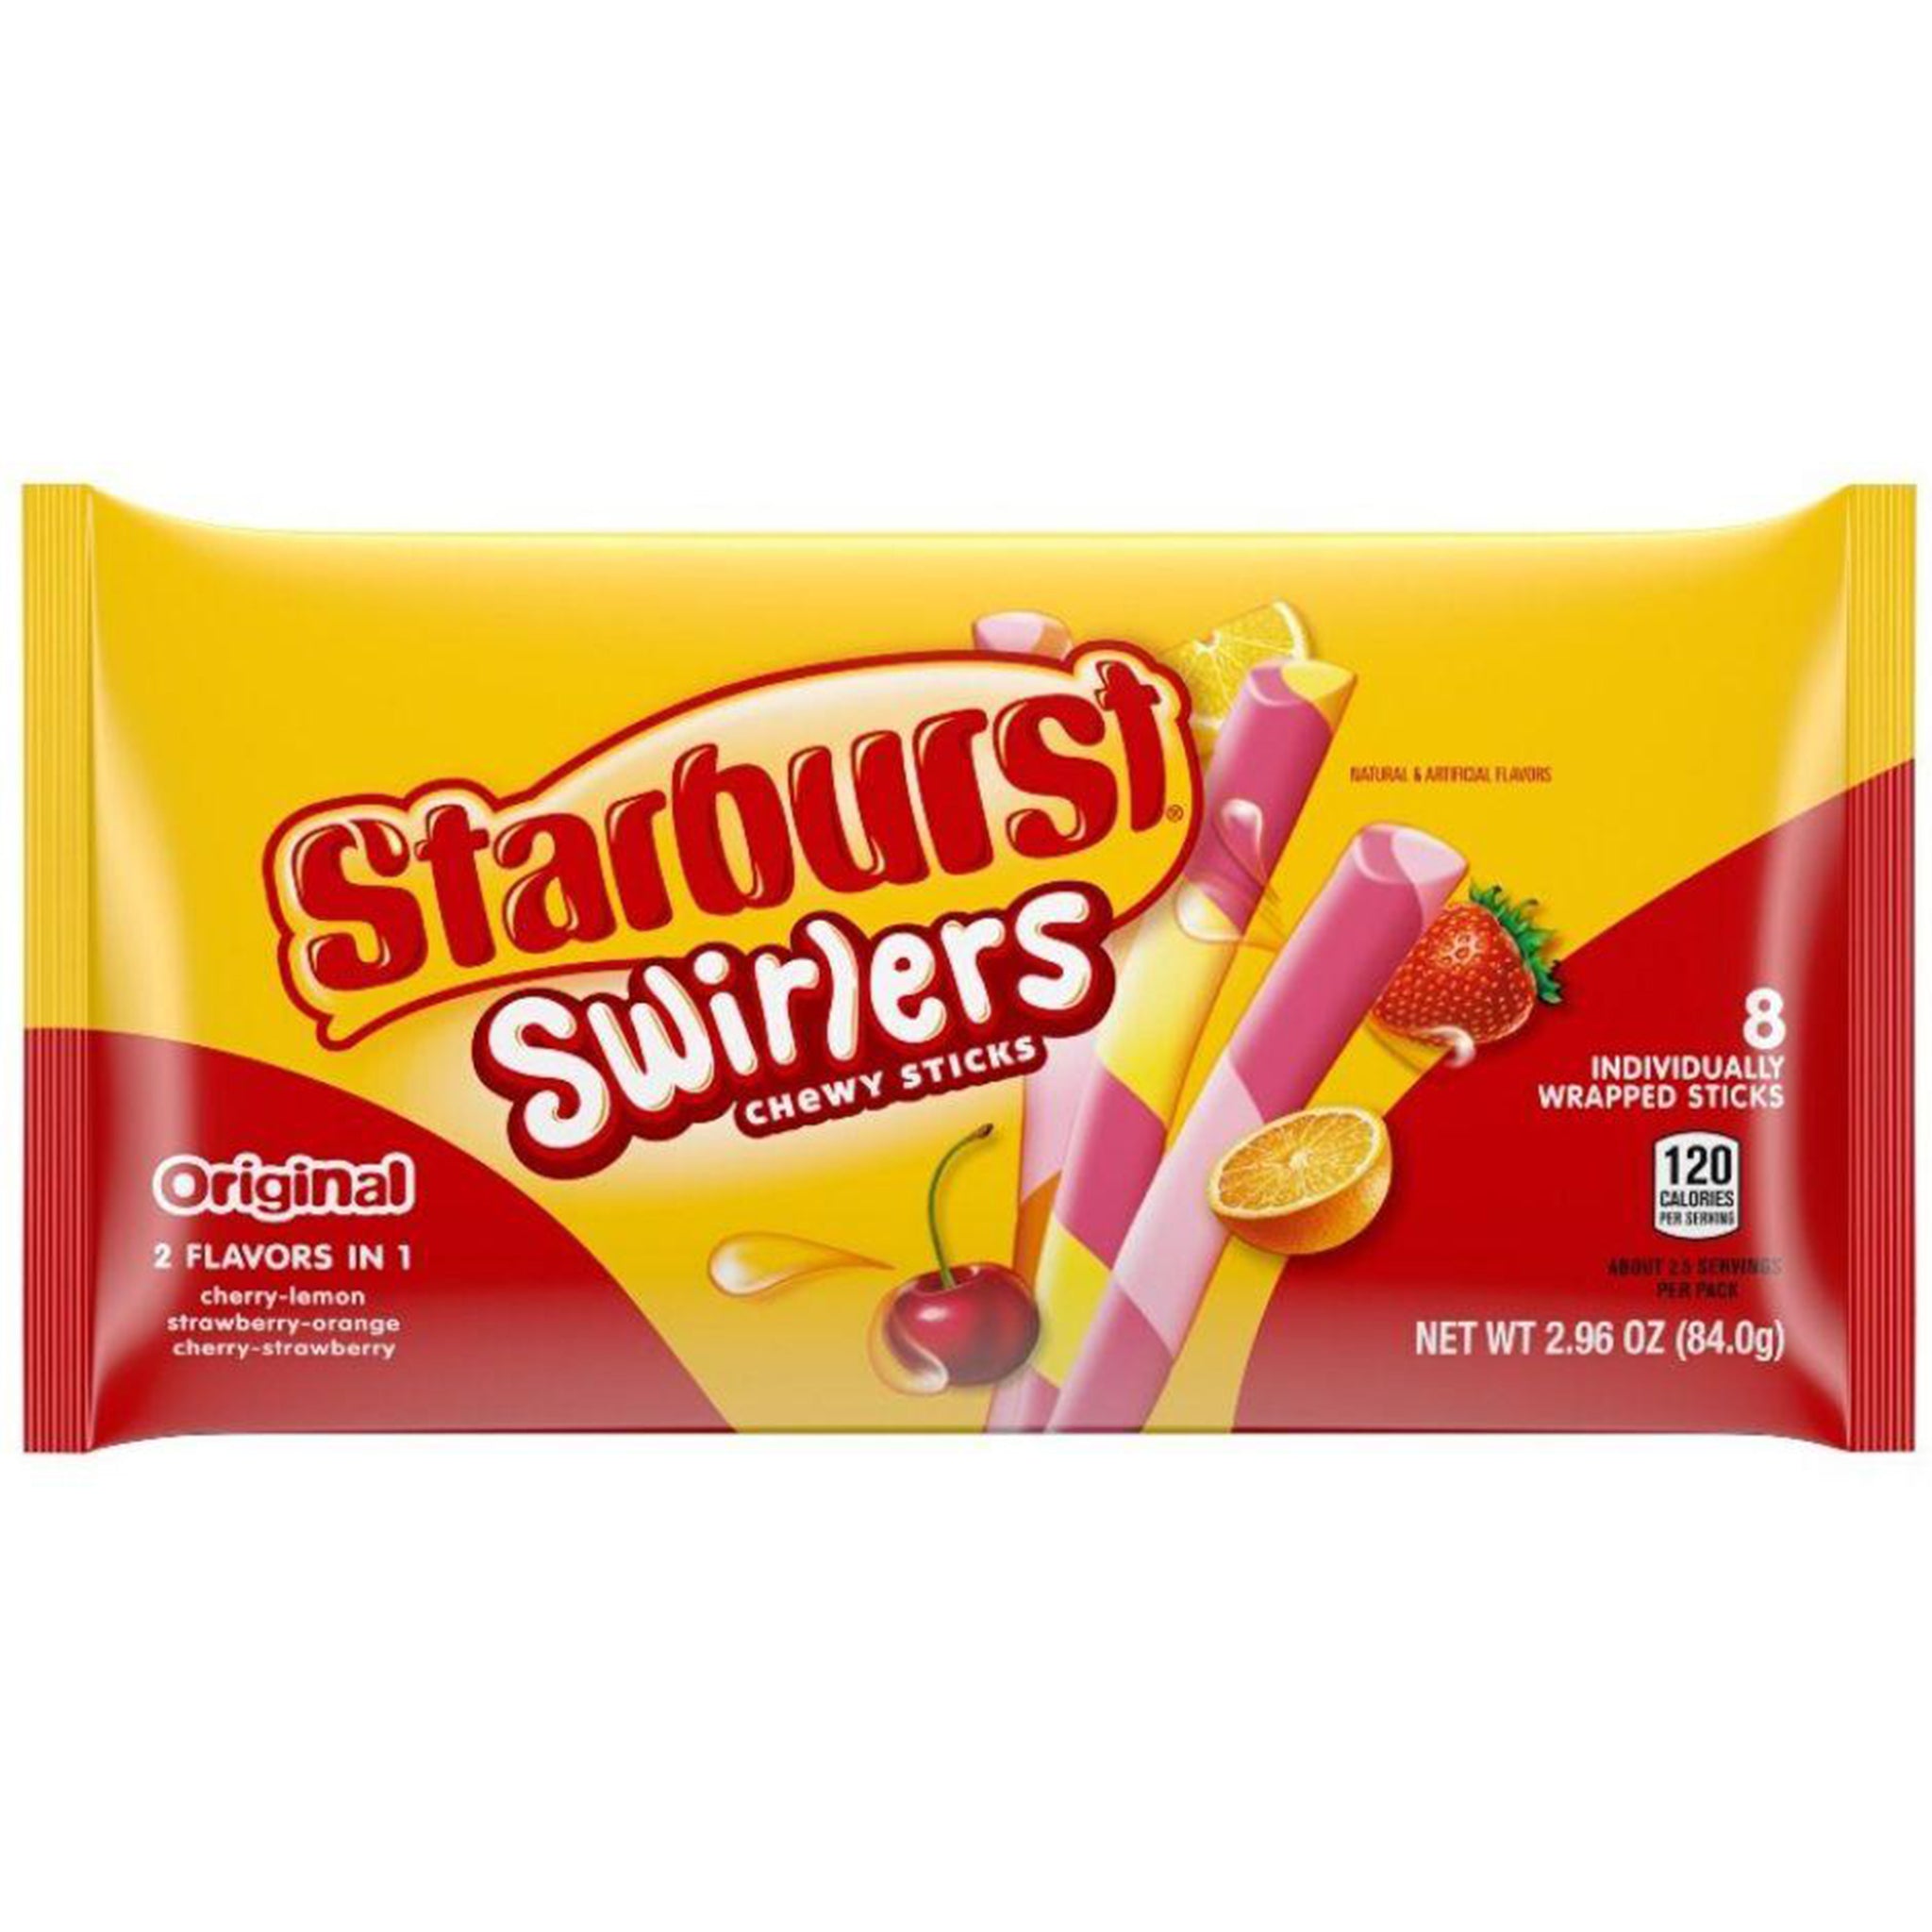 Starburst Swirlers